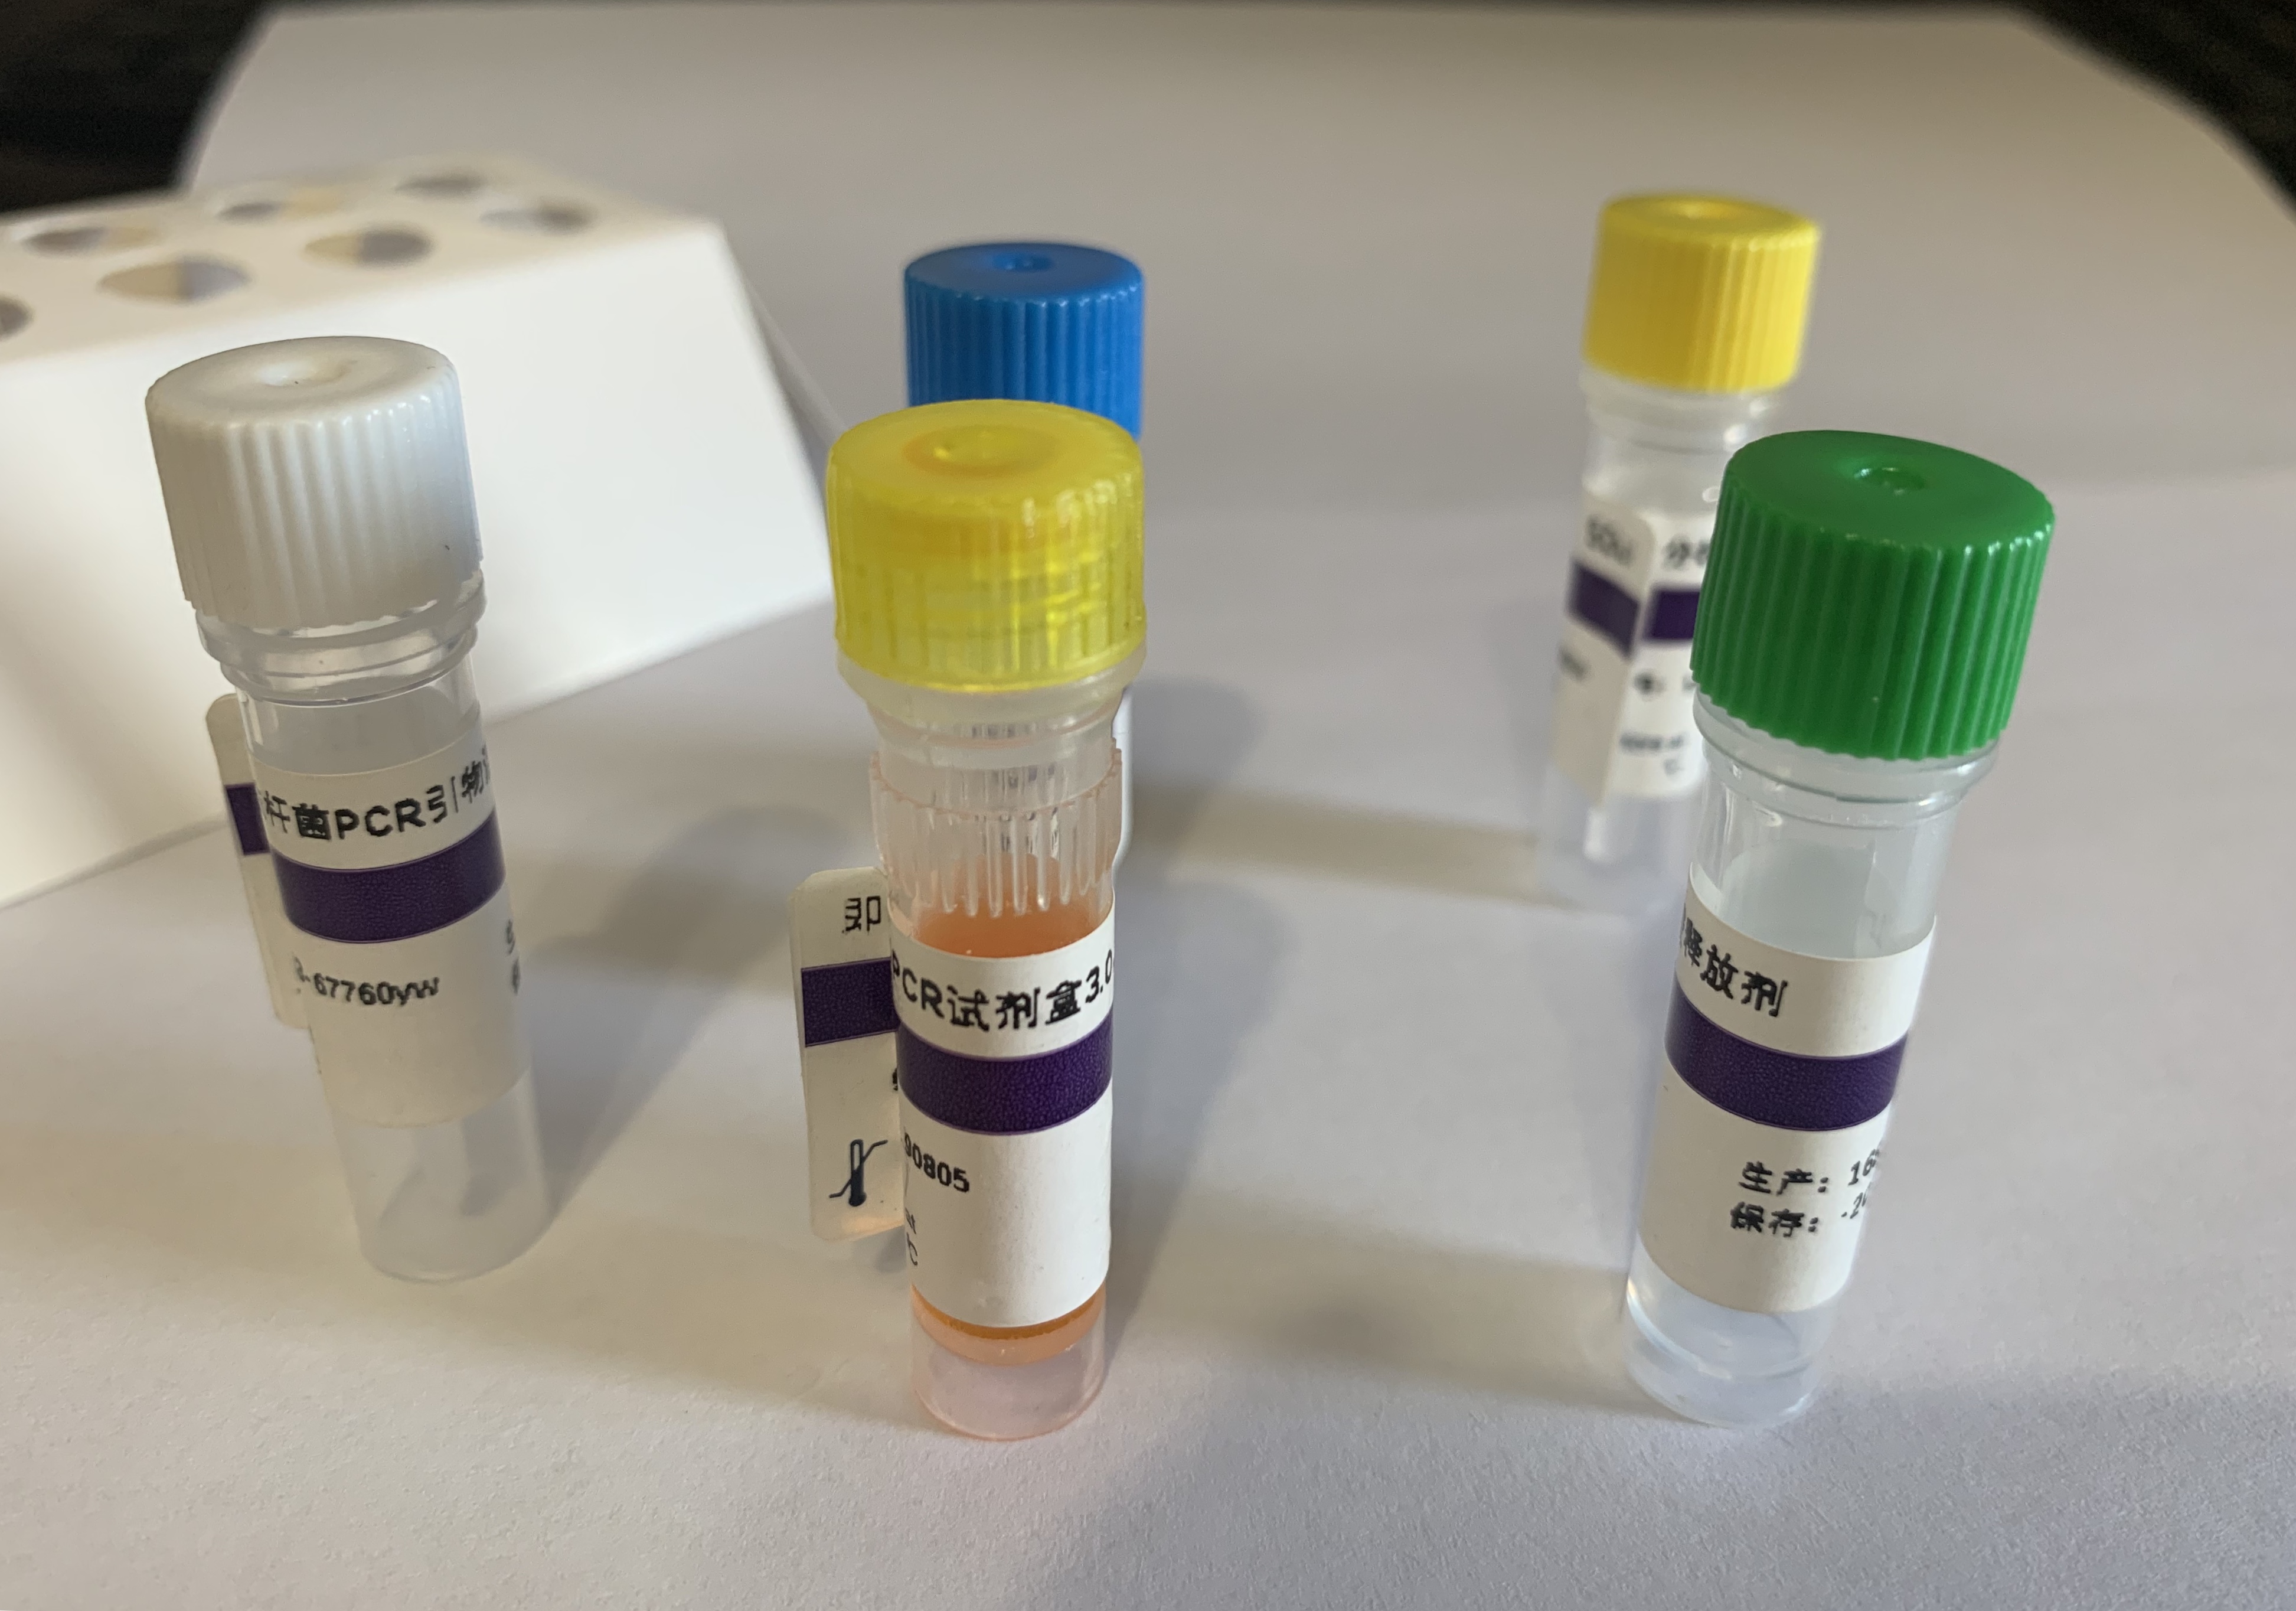 血吸虫通用PCR试剂盒